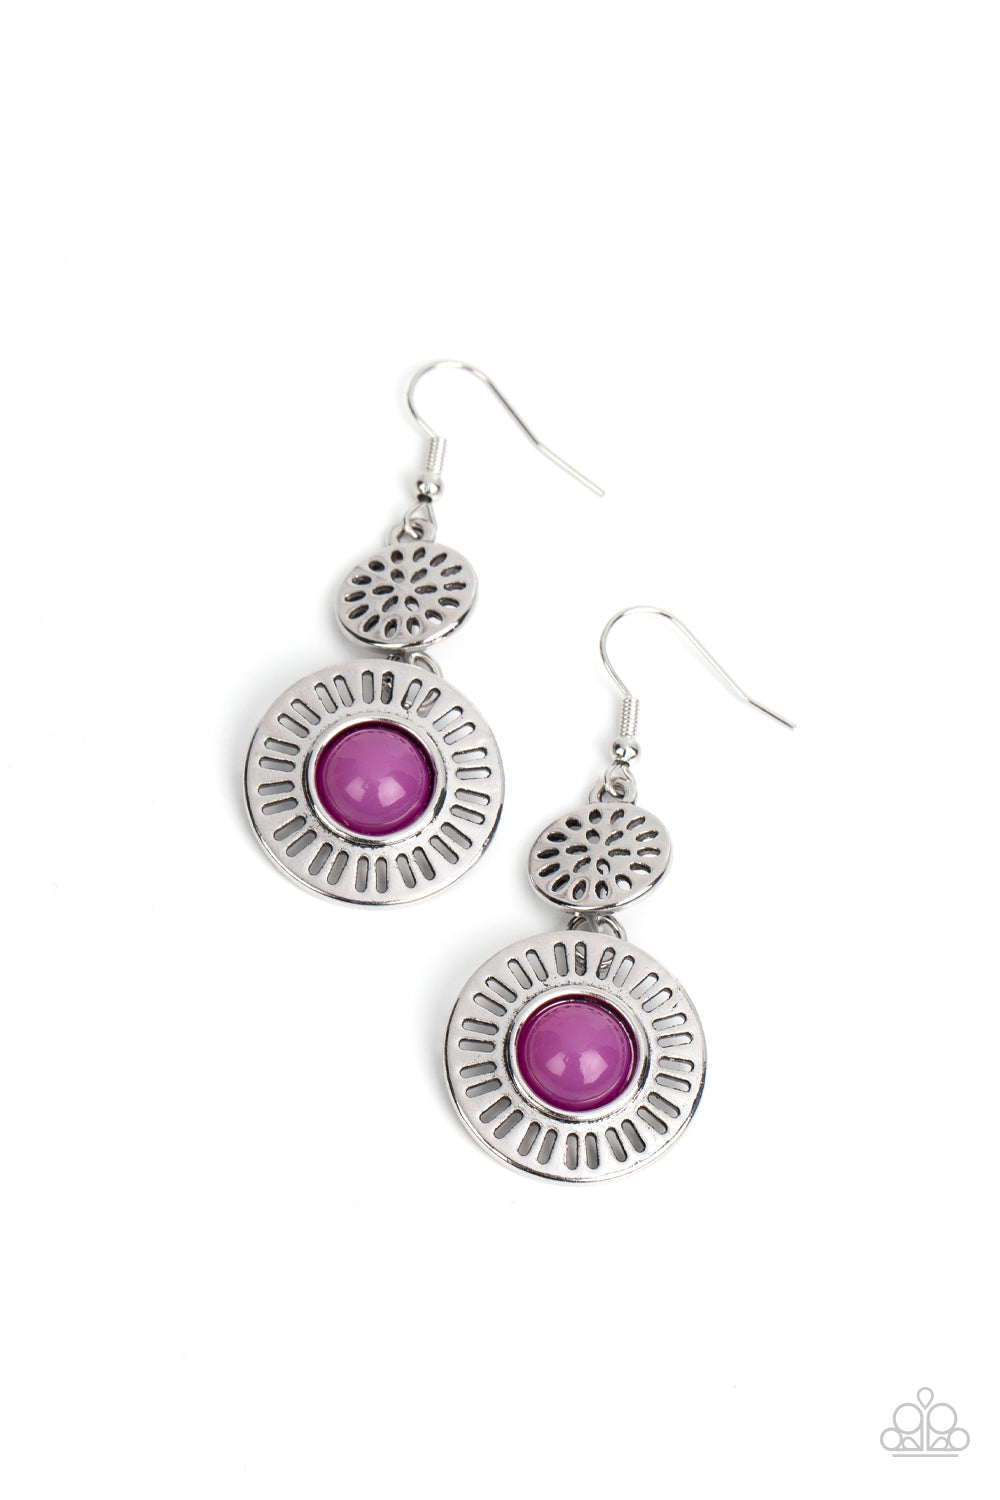 ocean-orchard-purple-earrings